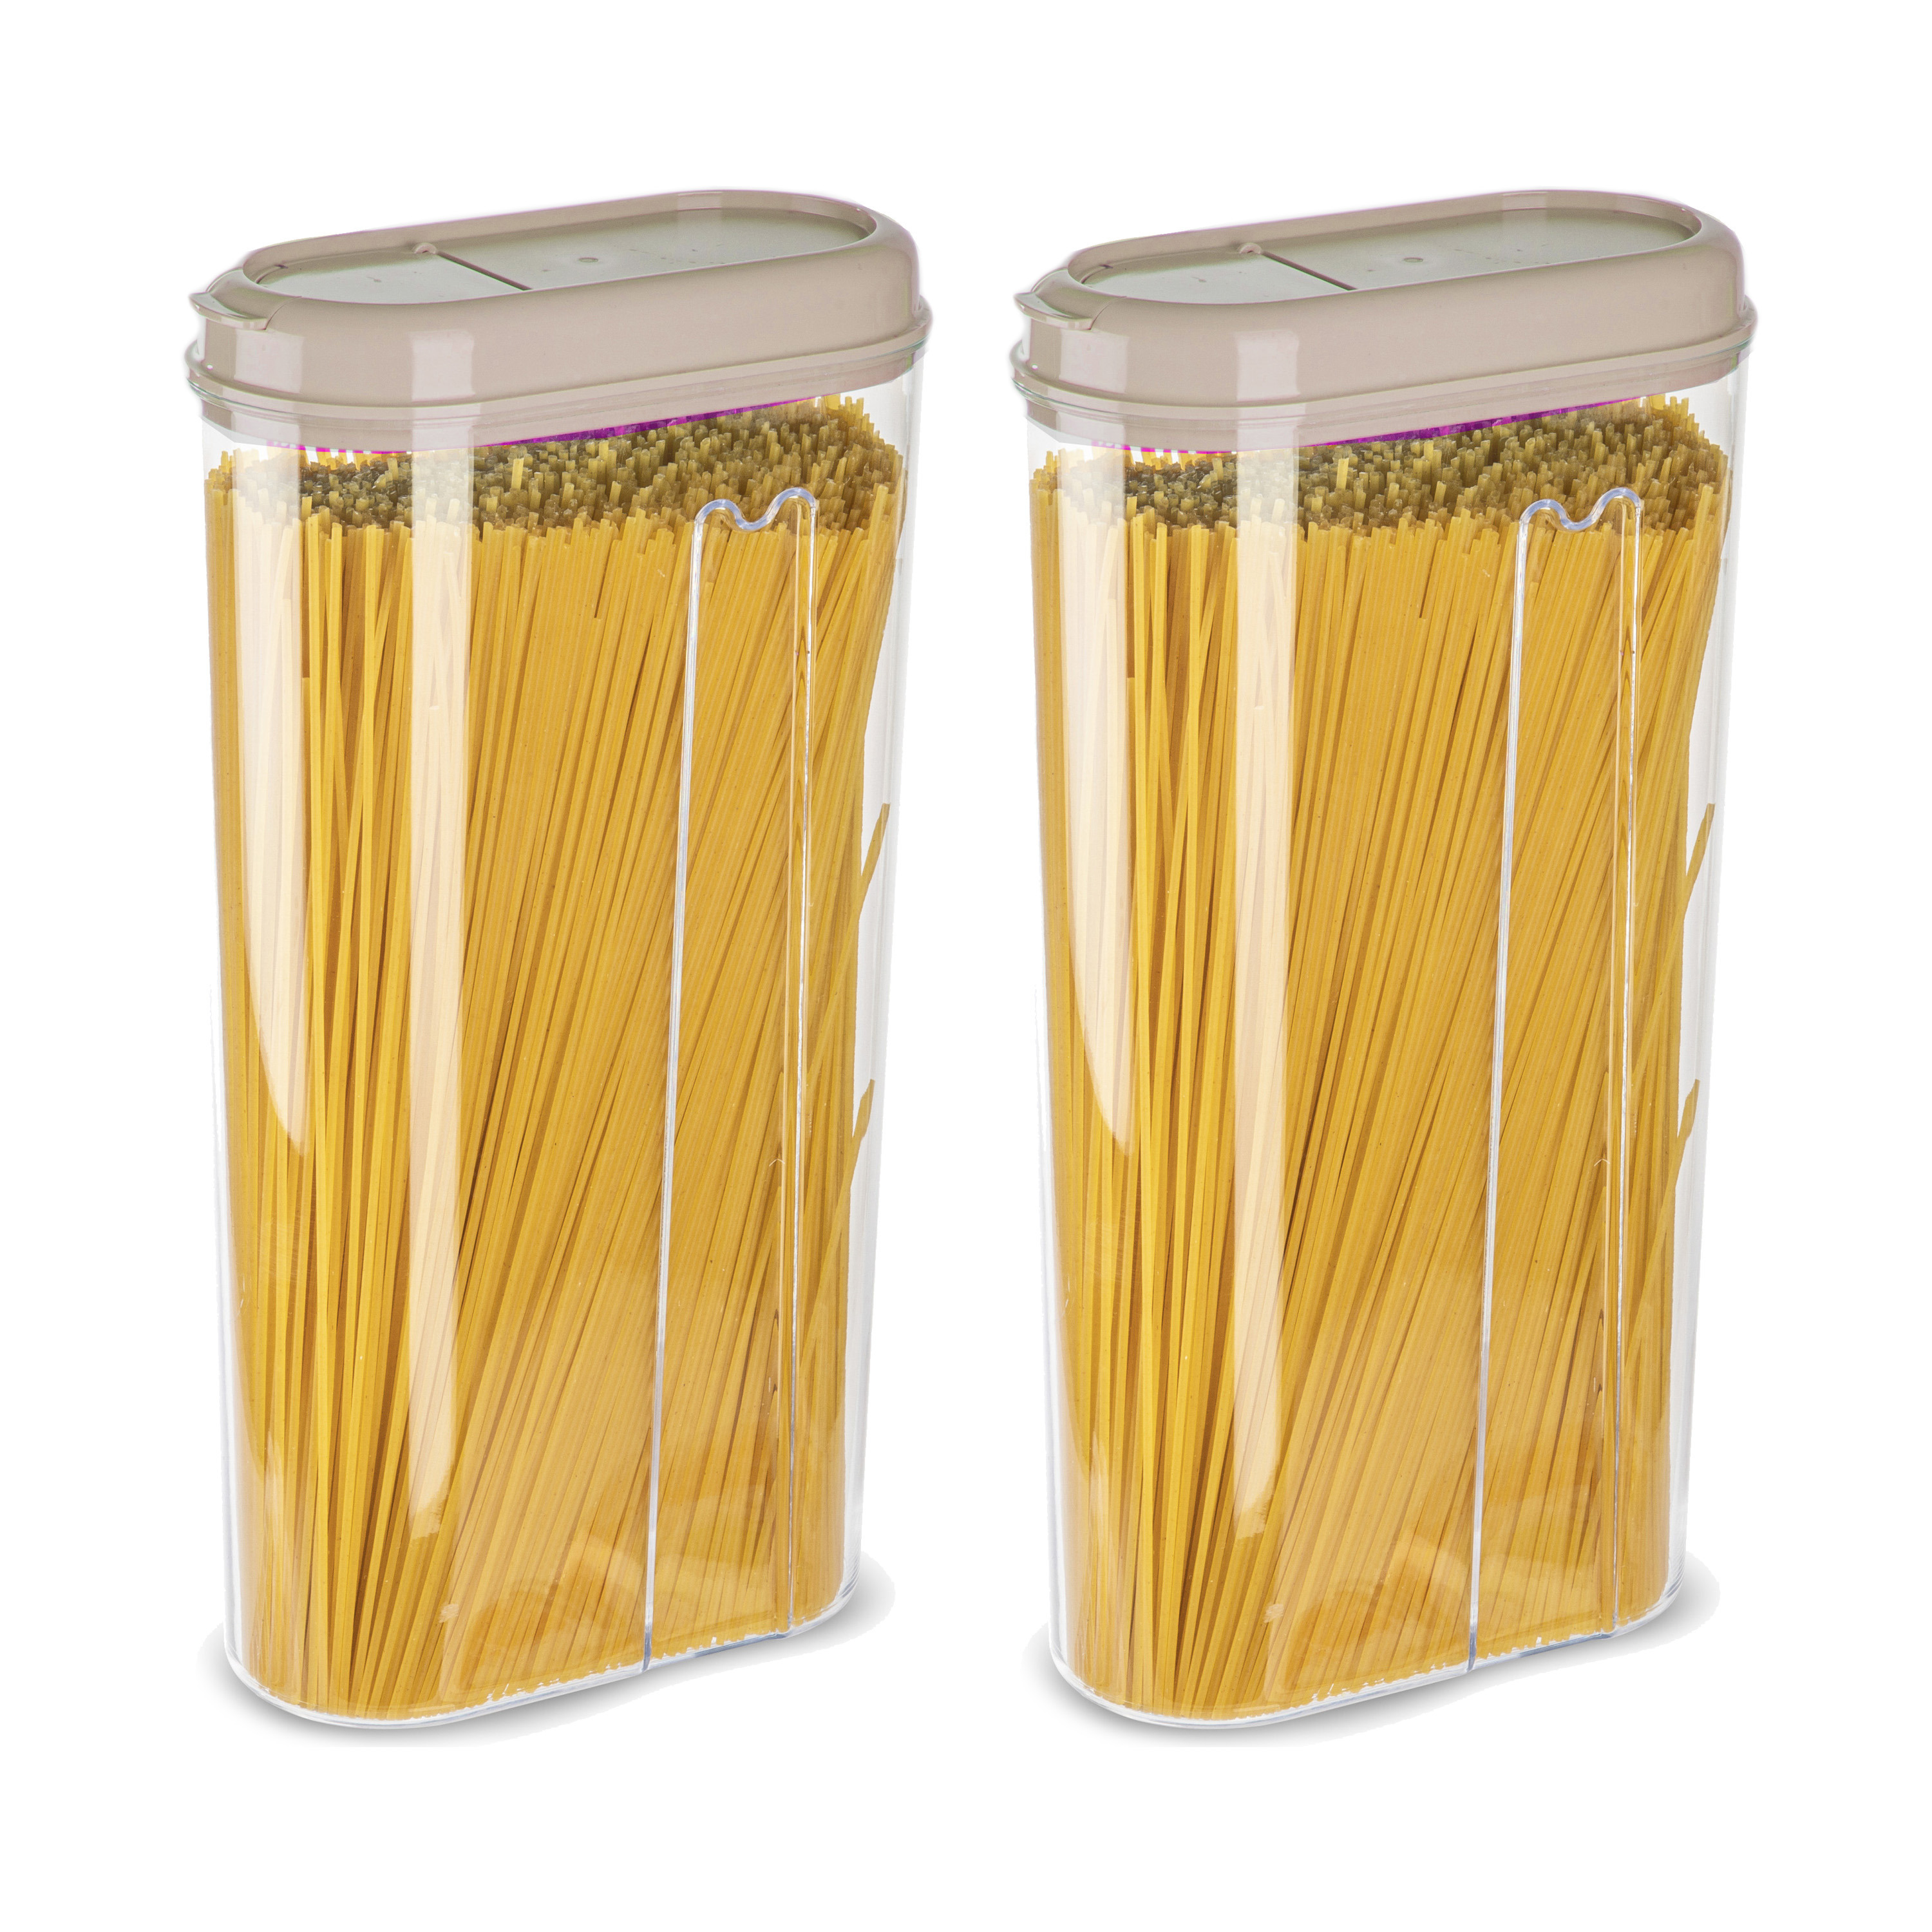 PlasticForte Voedselcontainer strooibus - 2x - beige - 2350 ml - kunststof - 15 x 8 x 30 cm - voorraadpot -